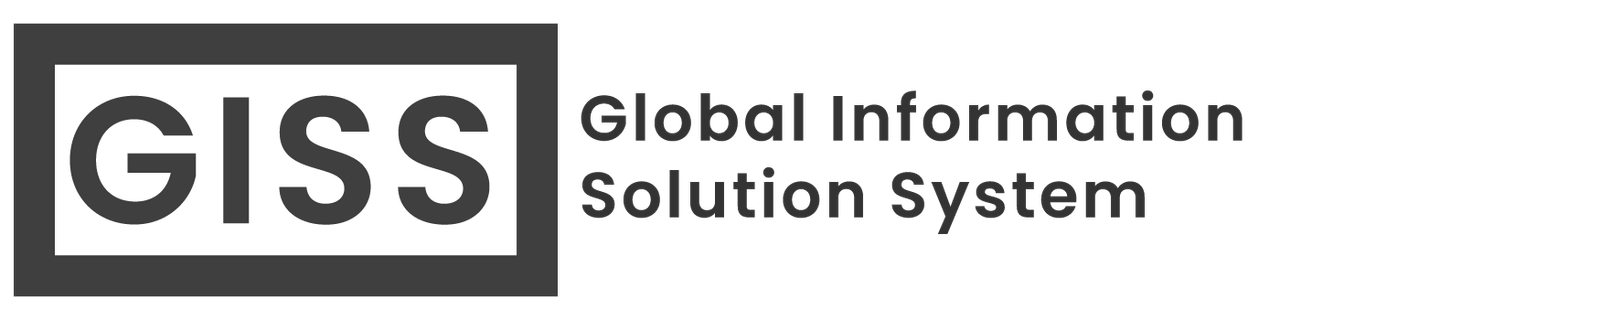 GIS System: Global Information Solution System